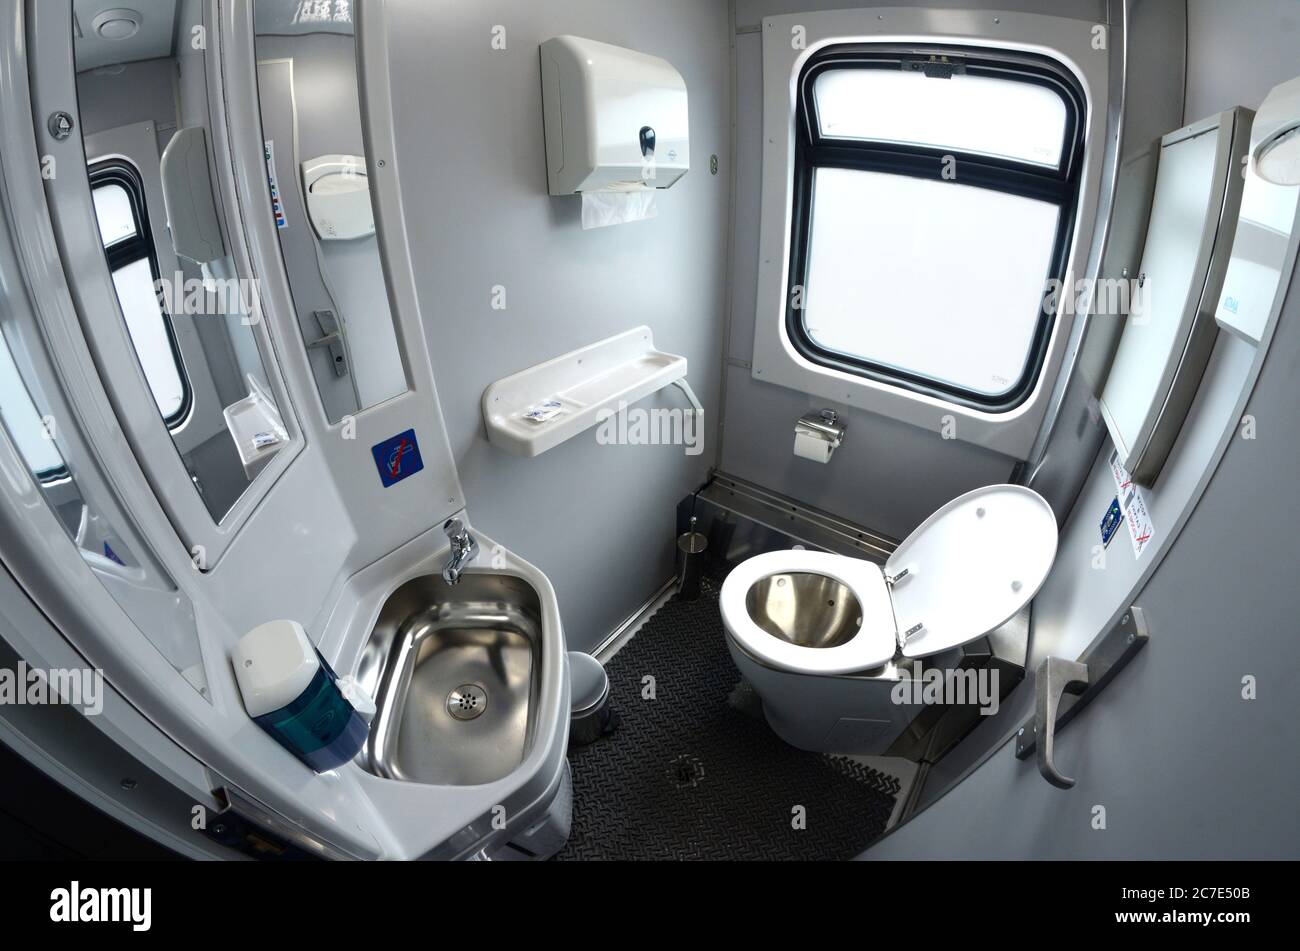 Toilette dans les chemins de fer ukrainiens transport de nuit de première classe d'un train de passagers cuvette de toilette, lavabo, miroirs et boîte de papier de toilette Banque D'Images